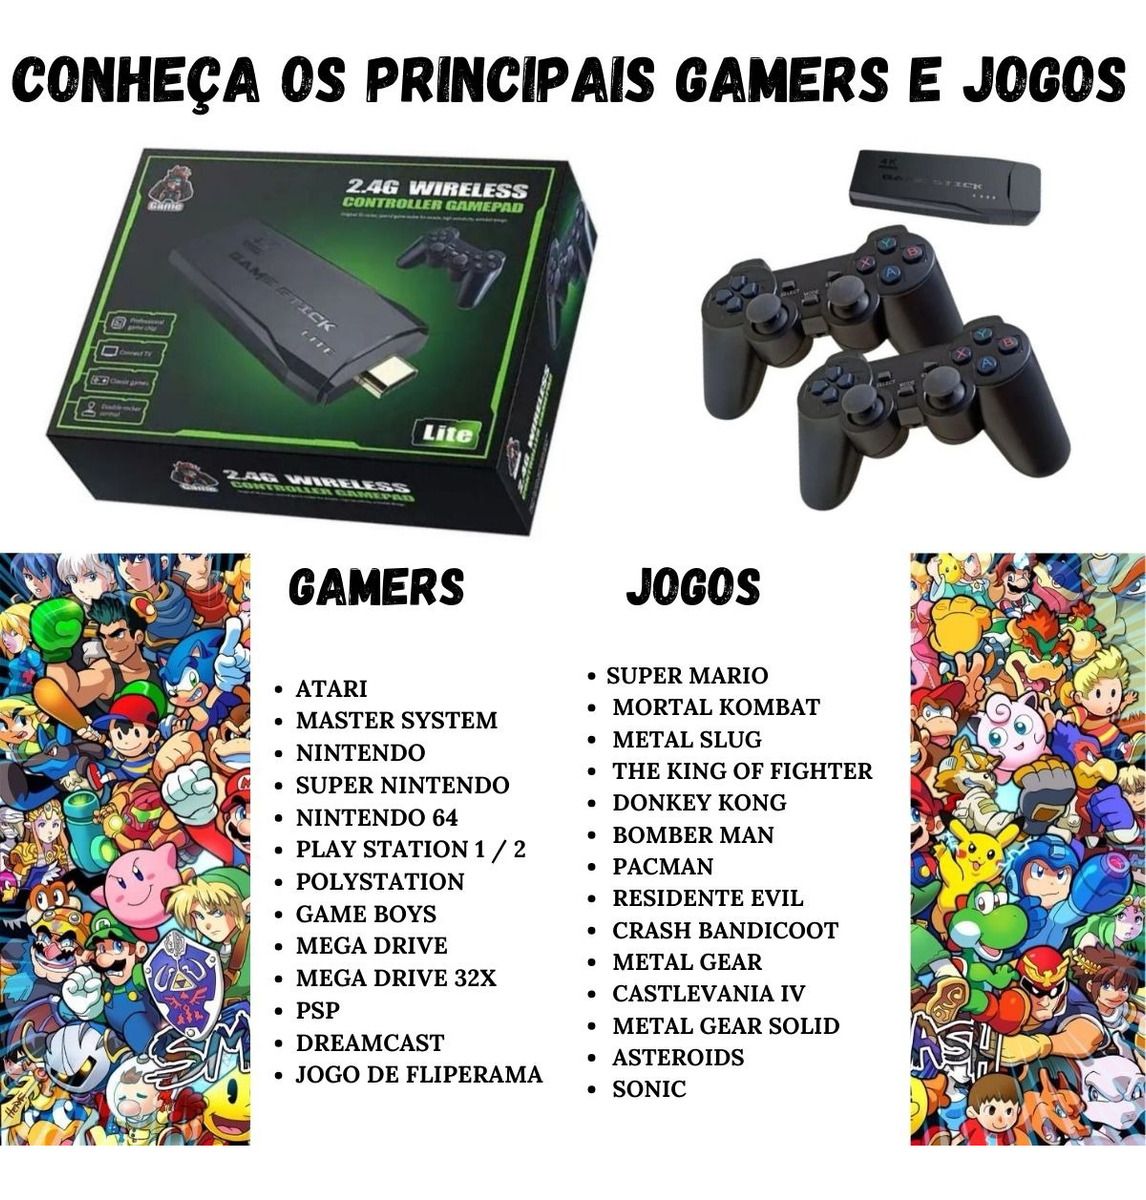 Jogos Online Wx - Qual pílula vcs escolheriam? - #jogos #gamer #tirinhas  #jogar #retro #games #diversao #riodejaneiro #baixada #novaiguaçu #brincar  #brasil #arcade #console #pc #android #apk